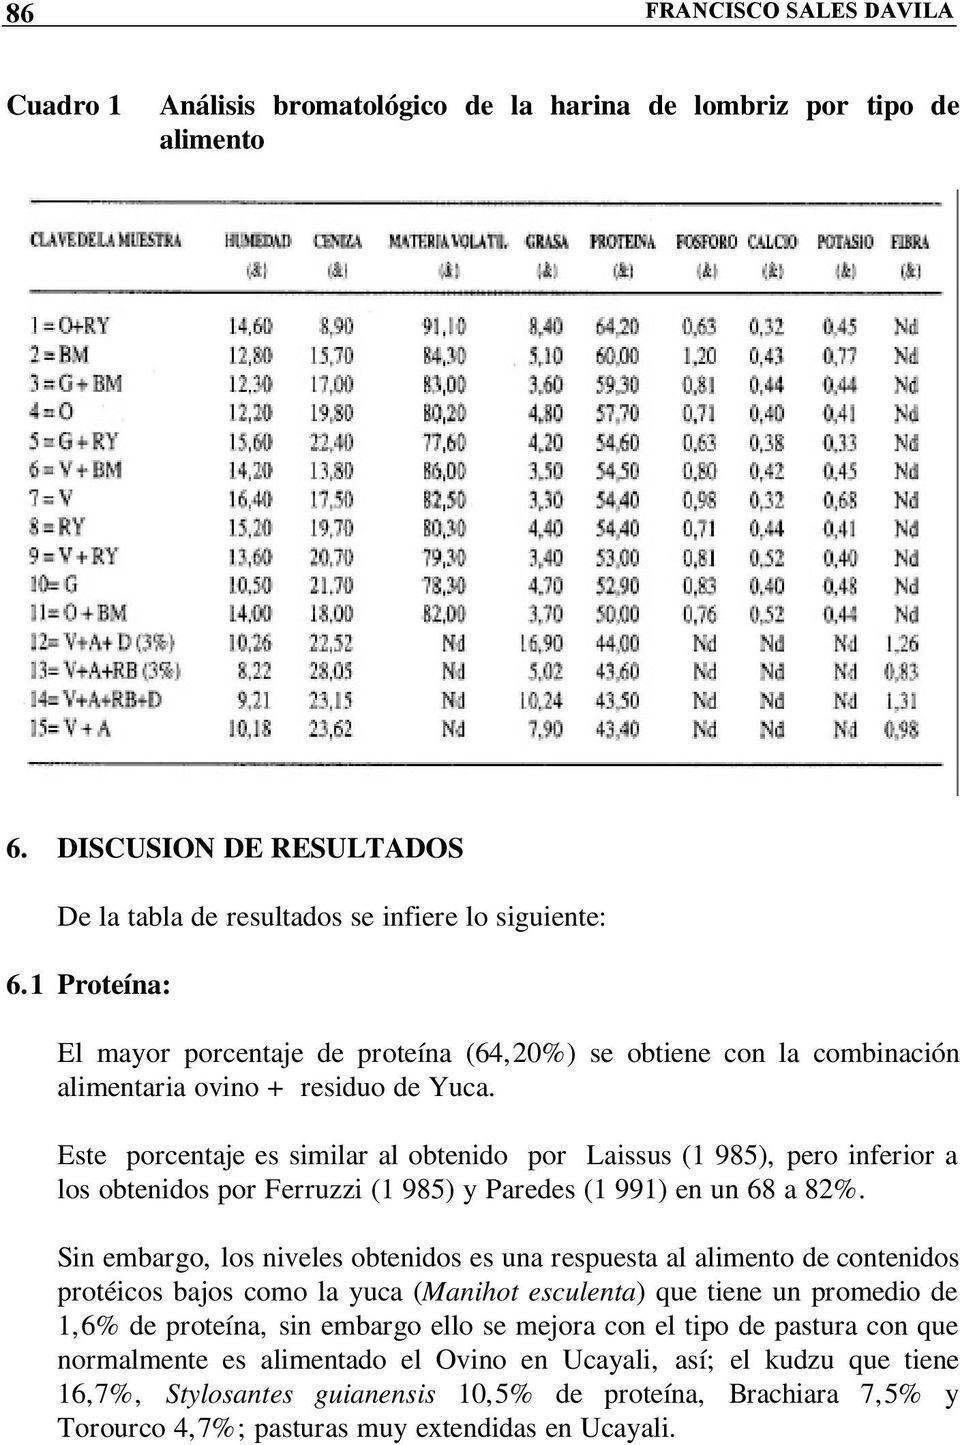 Este porcentaje es similar al obtenido por Laissus (1 985), pero inferior a los obtenidos por Ferruzzi (1 985) y Paredes (1 991) en un 68 a 82%.